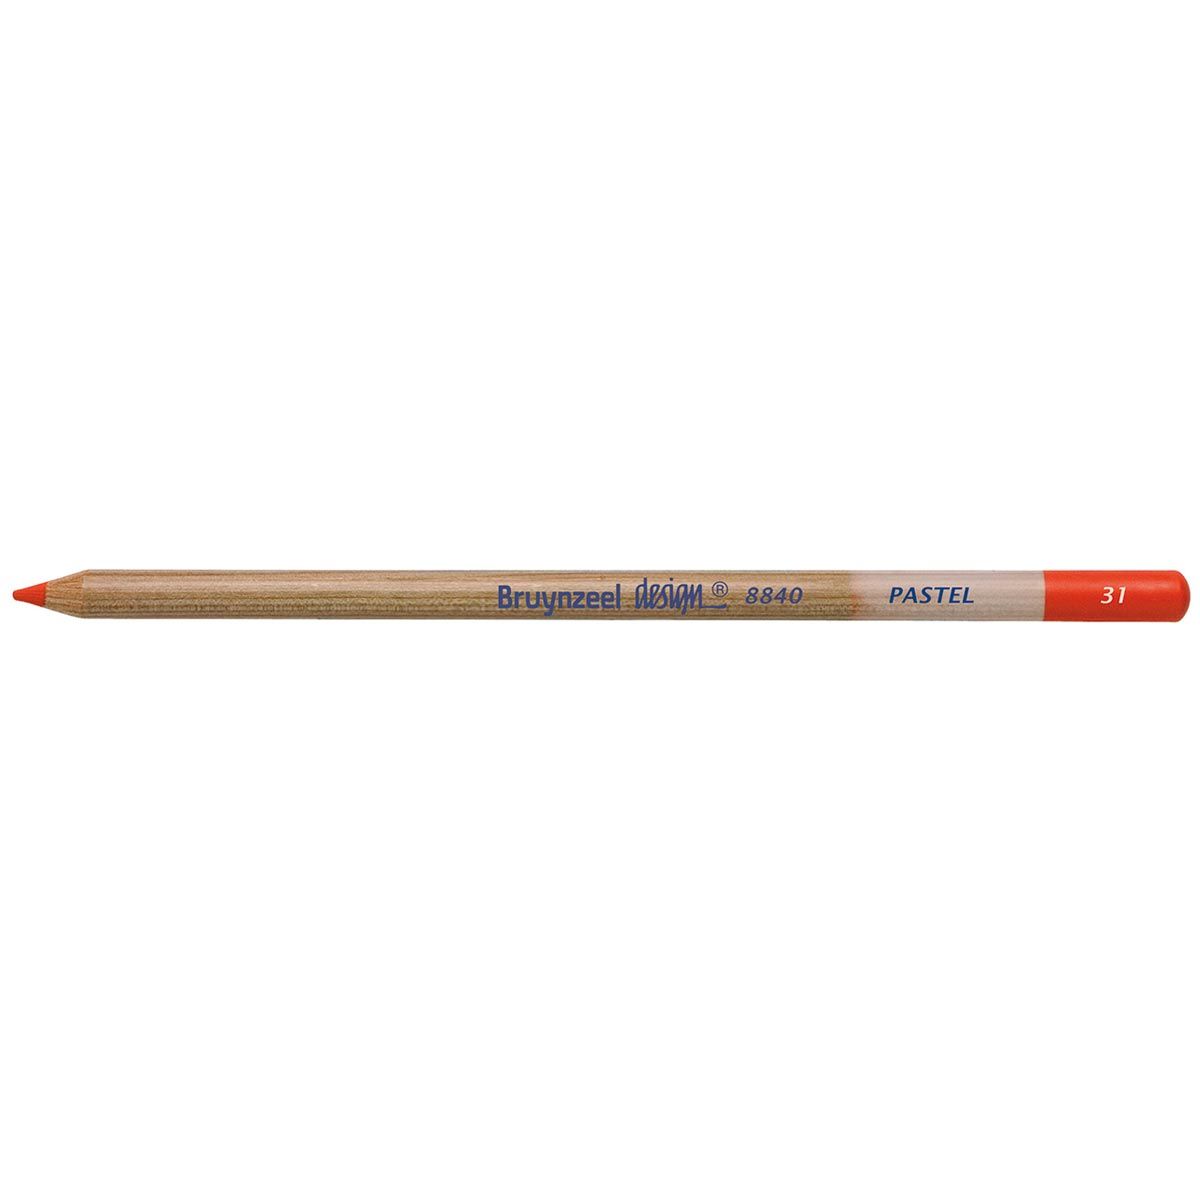 Bruynzeel Design Pastel Pencil - Vermilion 31